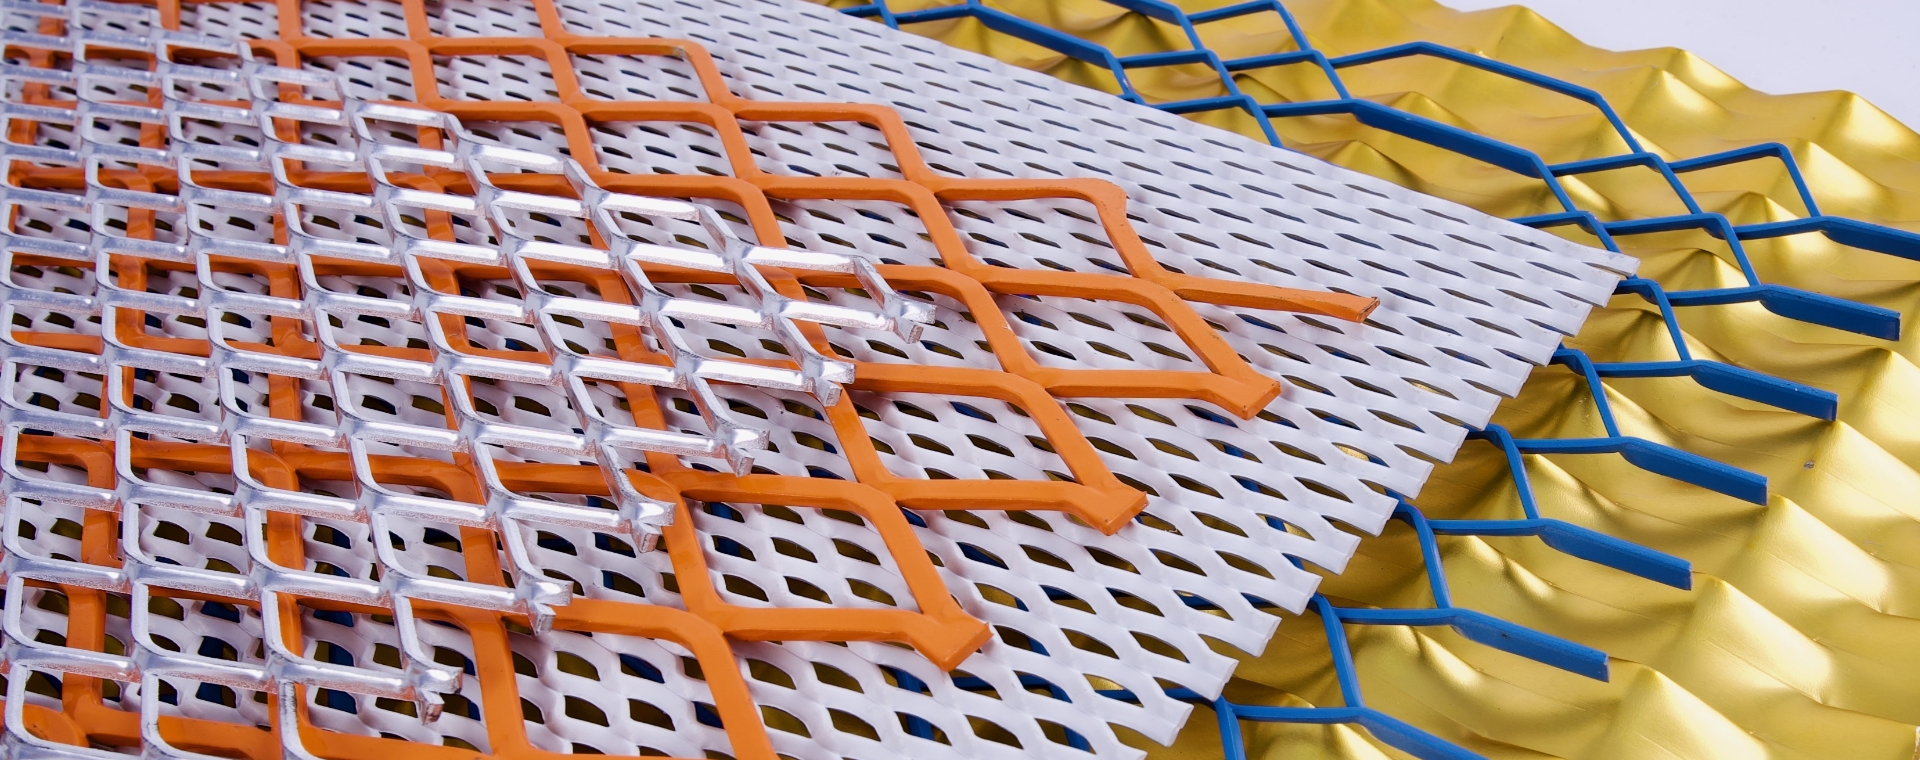 5個不同顏色的鋼板網片放在一起。